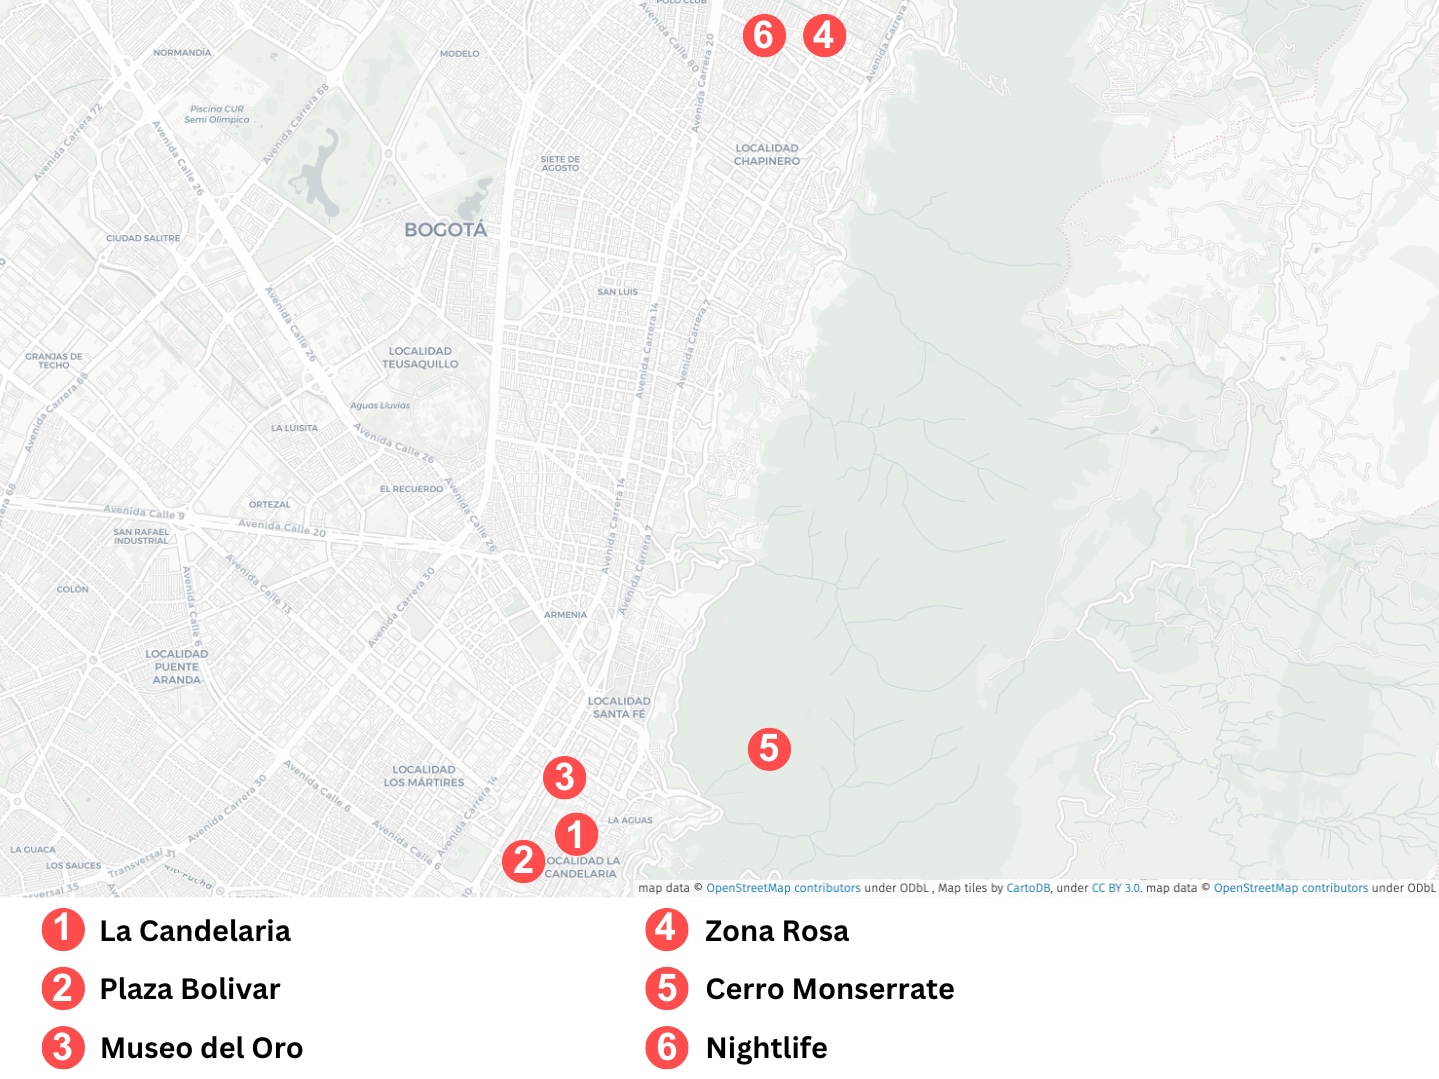 Karte von Bogota in Kolumbien mit Markierungen der einzelnen Bogota Sehenswürdigkeiten.